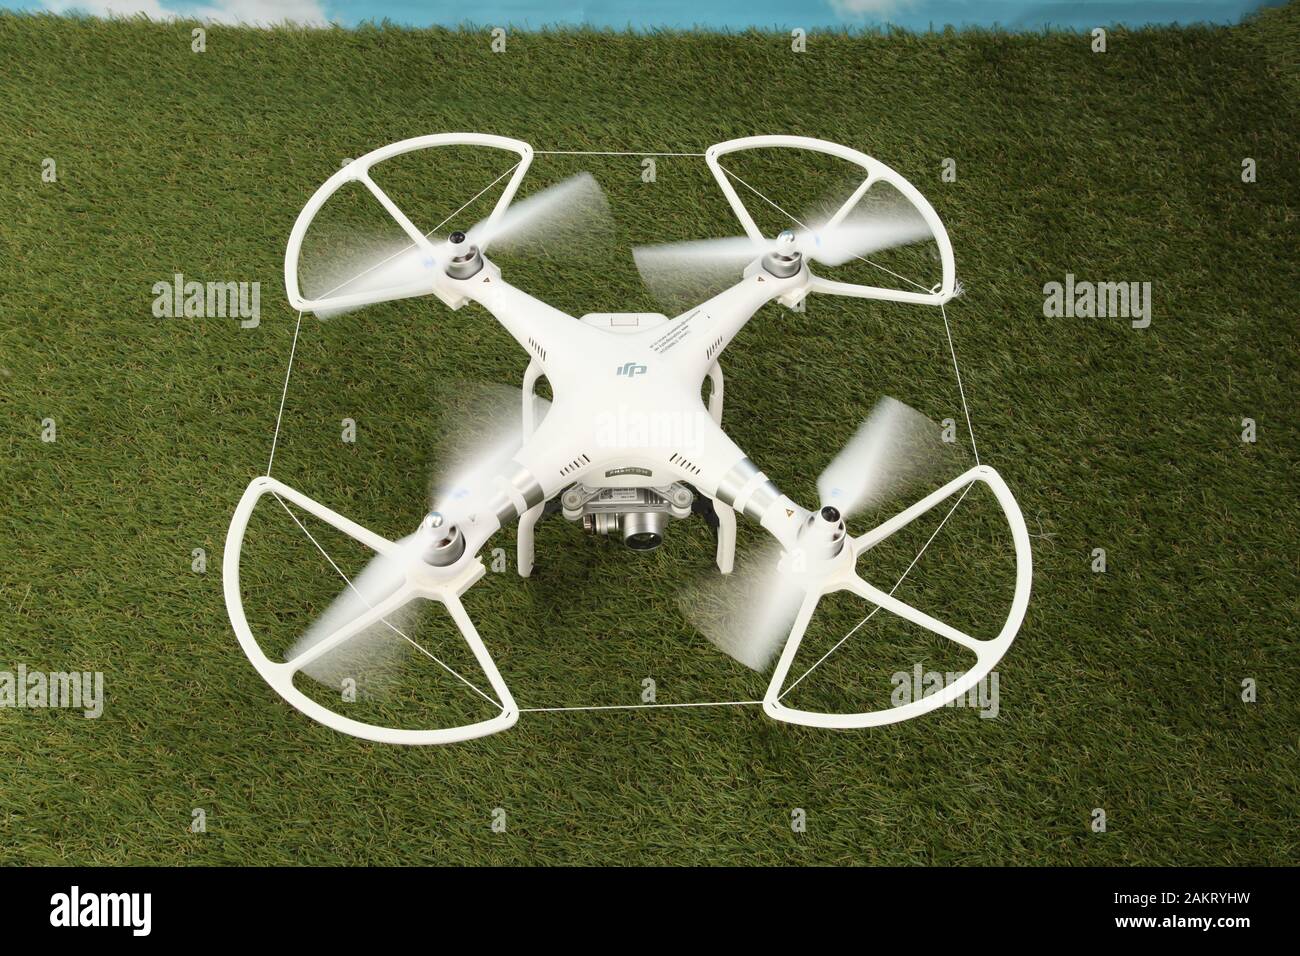 camera drone Stock Photo